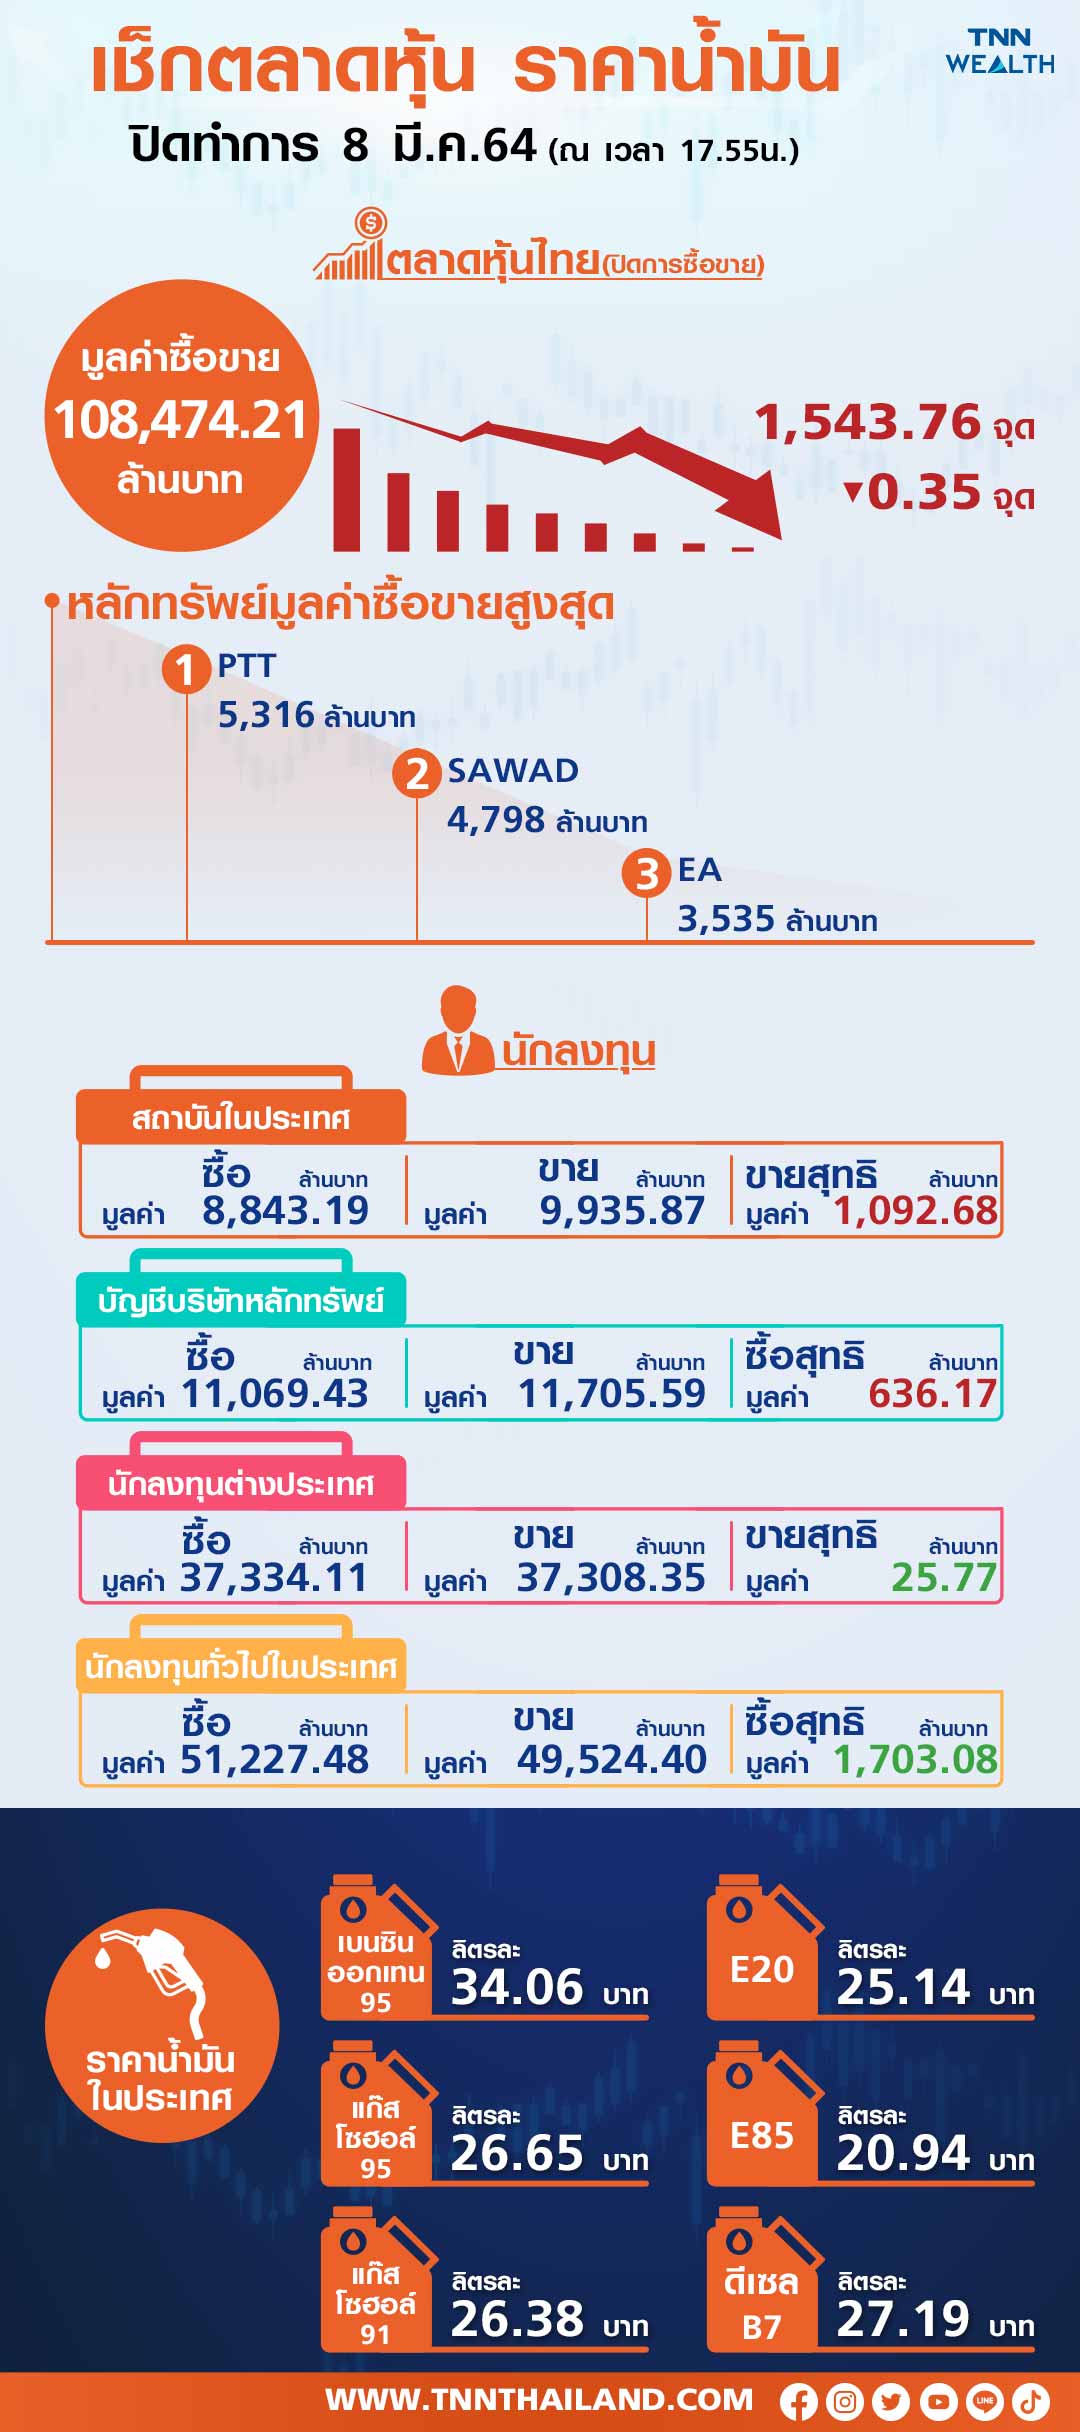  หุ้นไทยพักฐานช่วงสั้น   นักลงทุนเทขายทำกำไร-เงินหยวนอ่อน